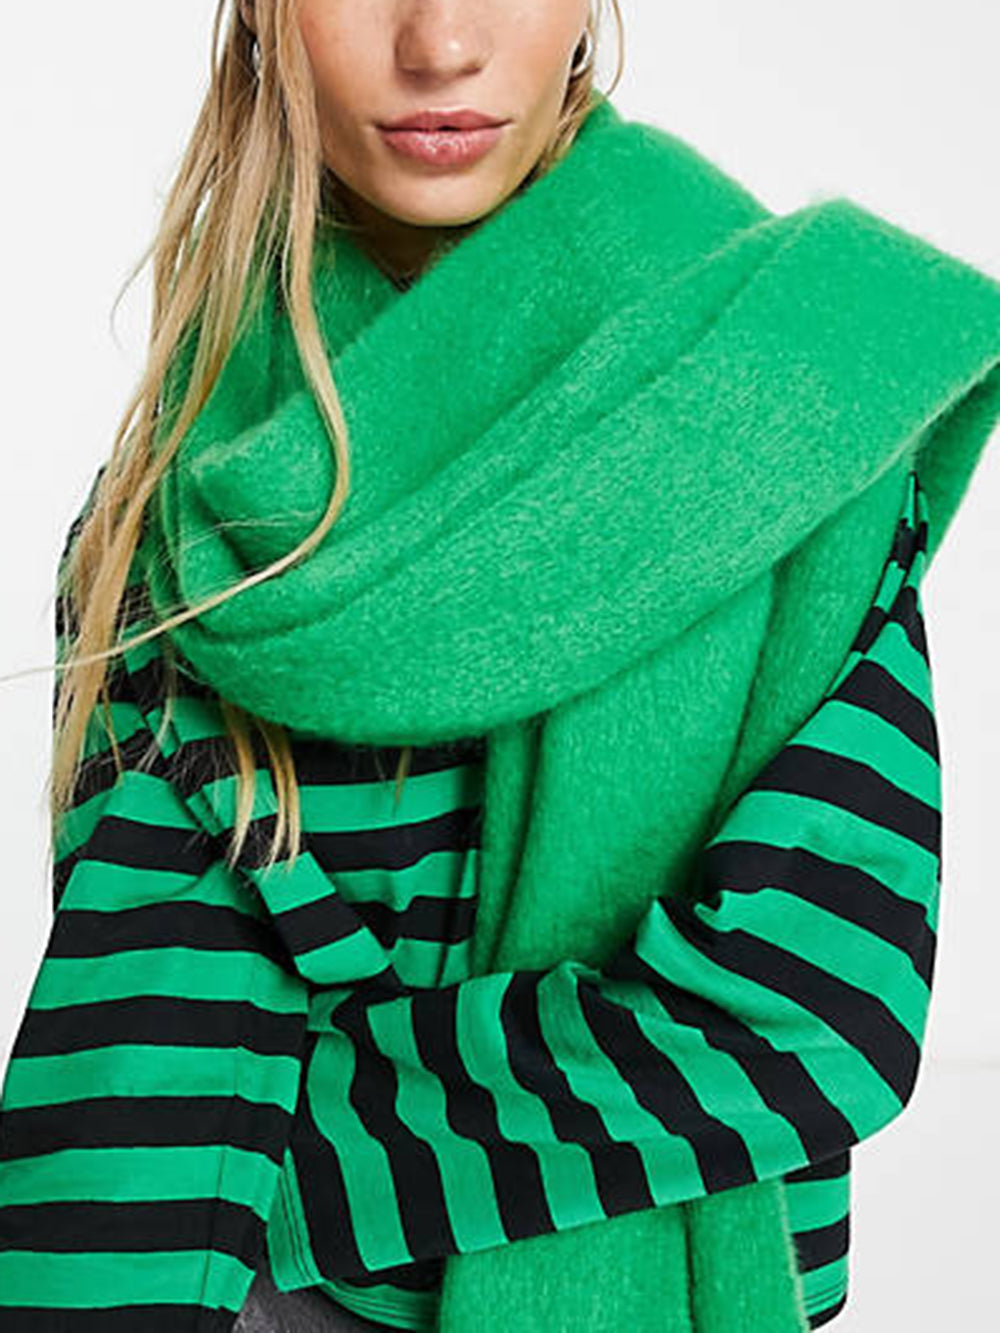 ソリッドカラーの厚い編み込みスカーフ